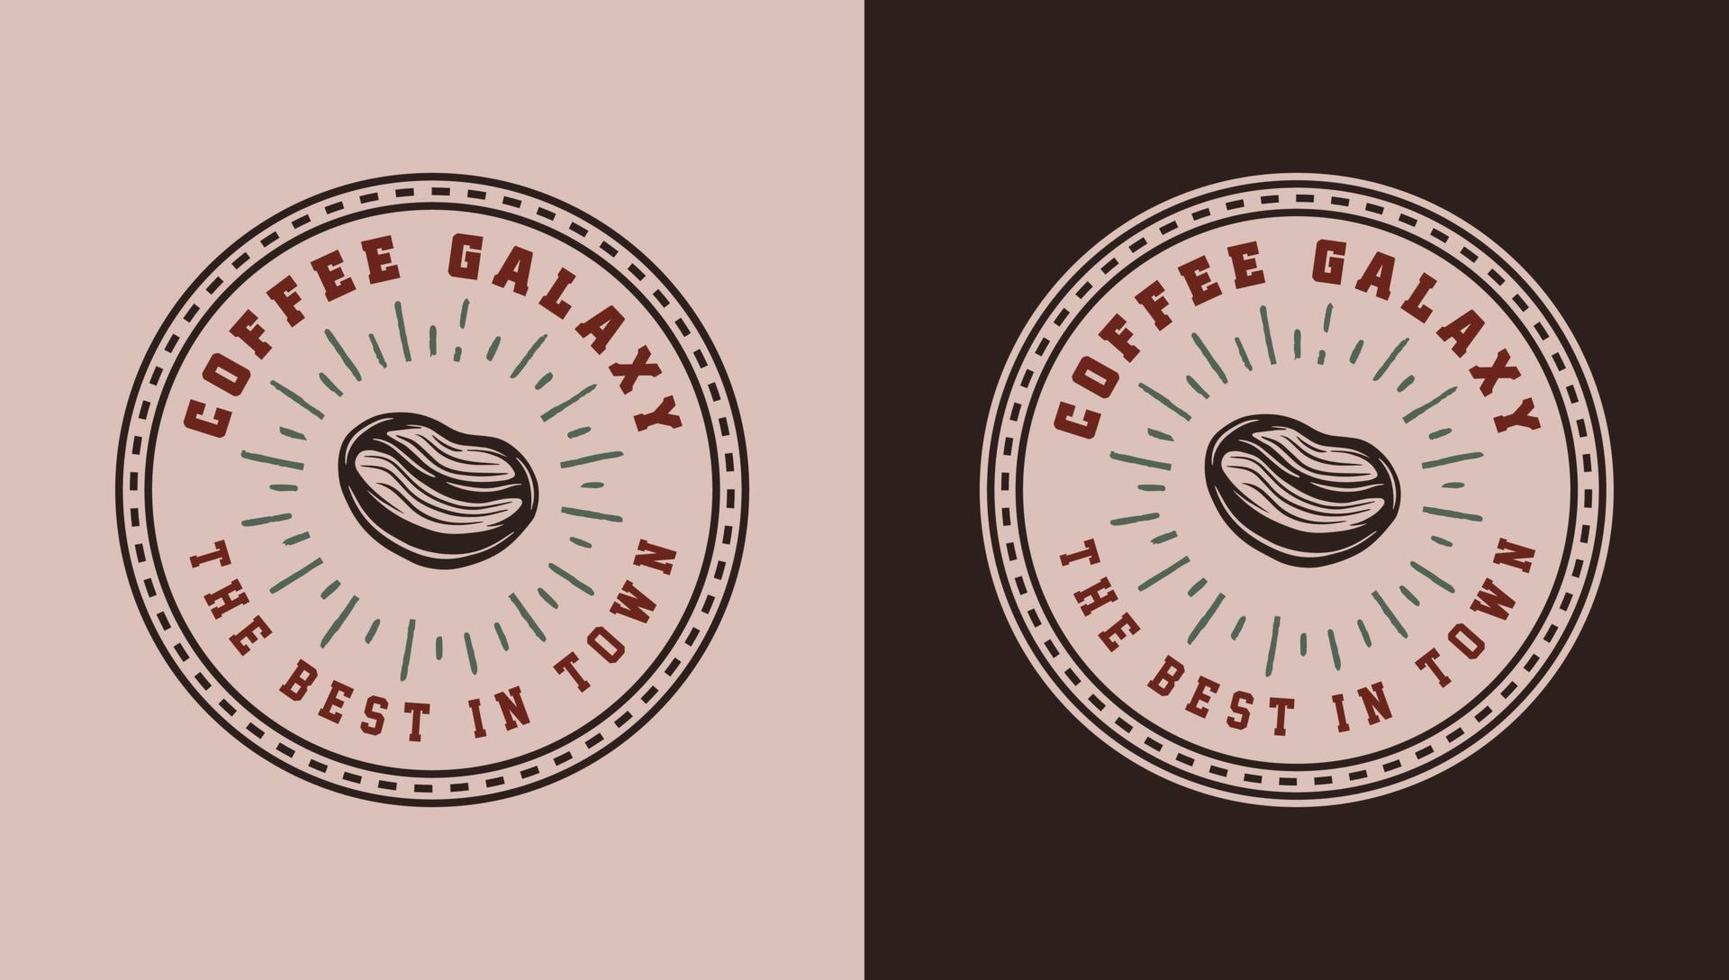 satz von vintage-retro-kaffee-emblem, logo, abzeichen, etikett. markieren, plakatieren oder drucken. monochrome Grafik. Vektor-Illustration. Illustration im Gravurstil. vektor